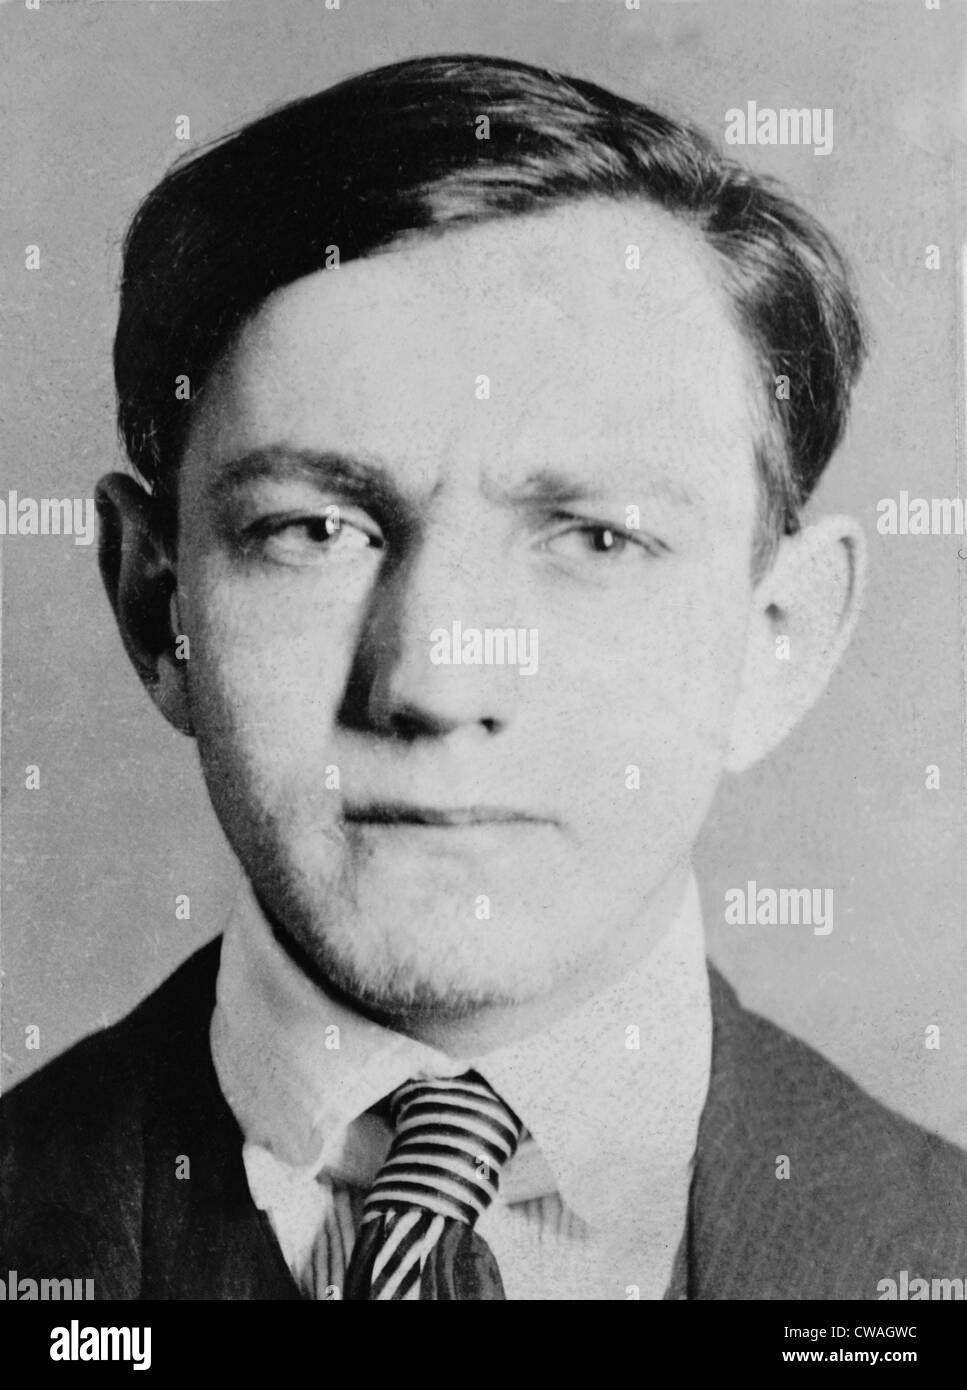 Dutch Schultz, geb. Arthur Flegenheimer (1902 – 1935), ein eingeschmuggelte New York Gangster der kontrolliertere Brauereien im Besitz und Stockfoto